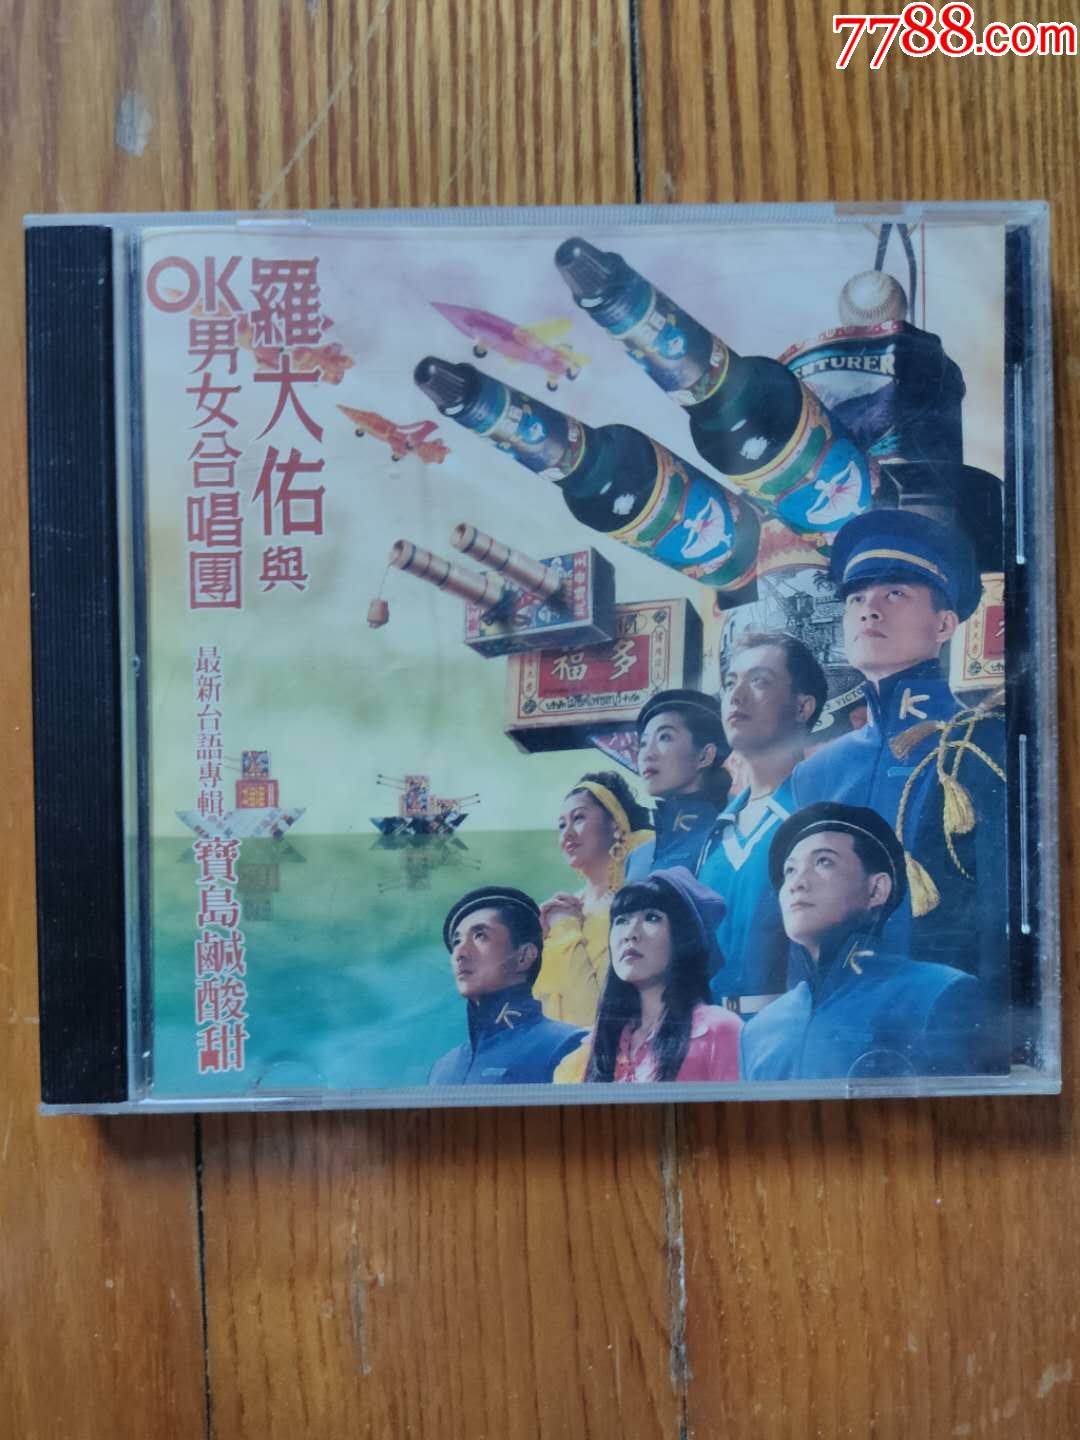 罗大佑与ok男女合唱团~宝岛咸酸甜(tw版cd)~首版